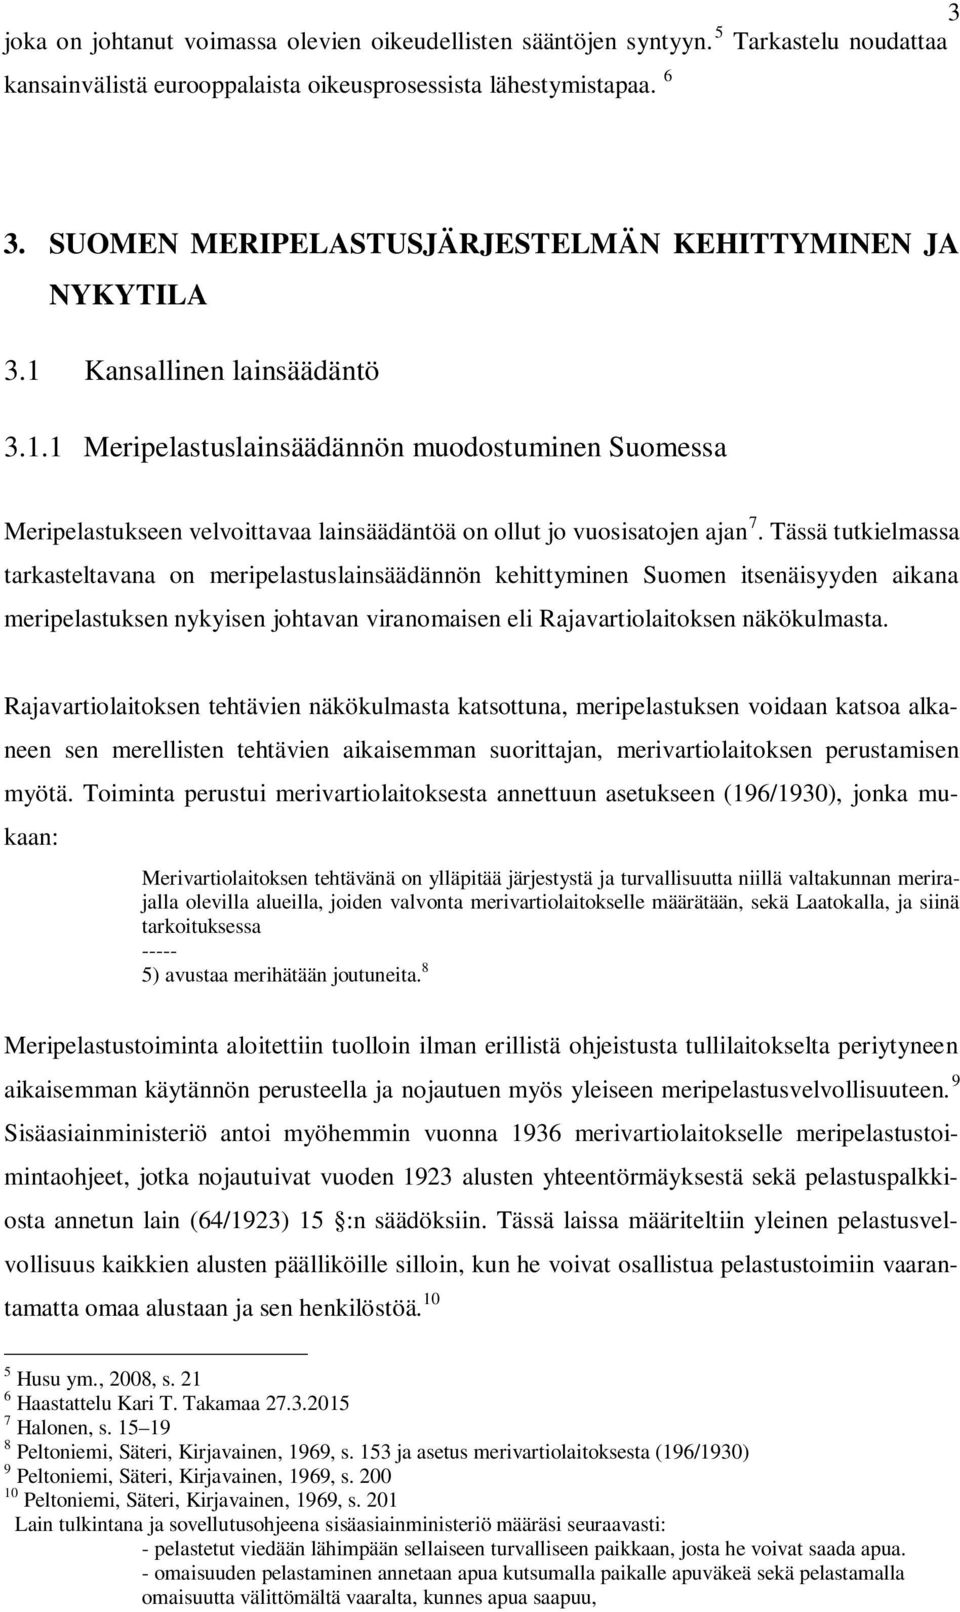 Tässä tutkielmassa tarkasteltavana on meripelastuslainsäädännön kehittyminen Suomen itsenäisyyden aikana meripelastuksen nykyisen johtavan viranomaisen eli Rajavartiolaitoksen näkökulmasta.